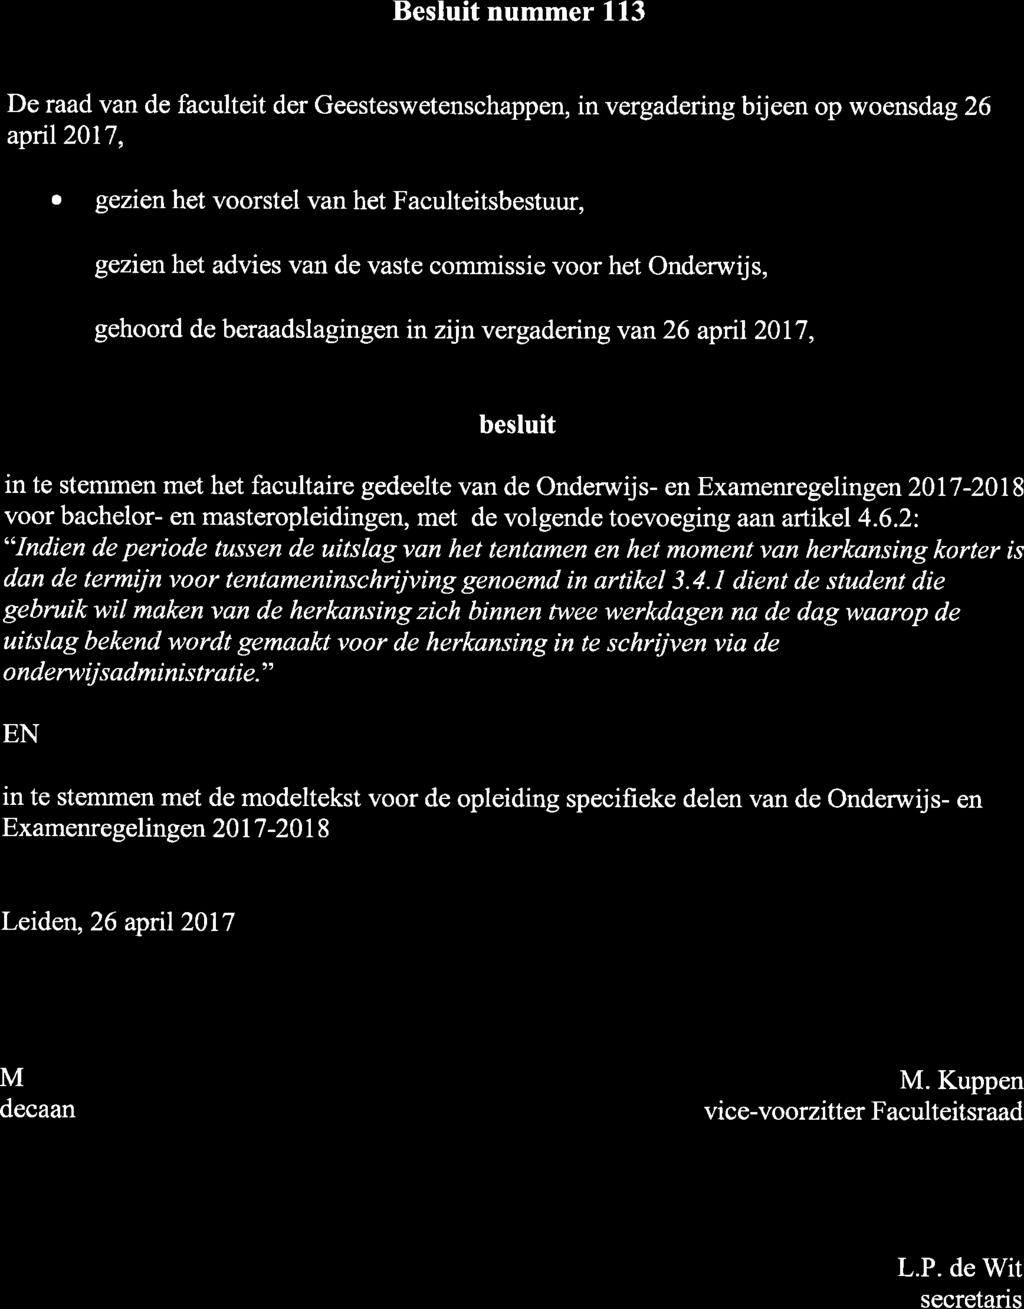 Universiteit Leiden Besluit nummer 113 De raad van de faculteit der Geesteswetenschappen, in vergadering bijeen op woensdag 26 apnl20l7, o gezienhet voorstel van het Faculteitsbestuur, o gezienhet